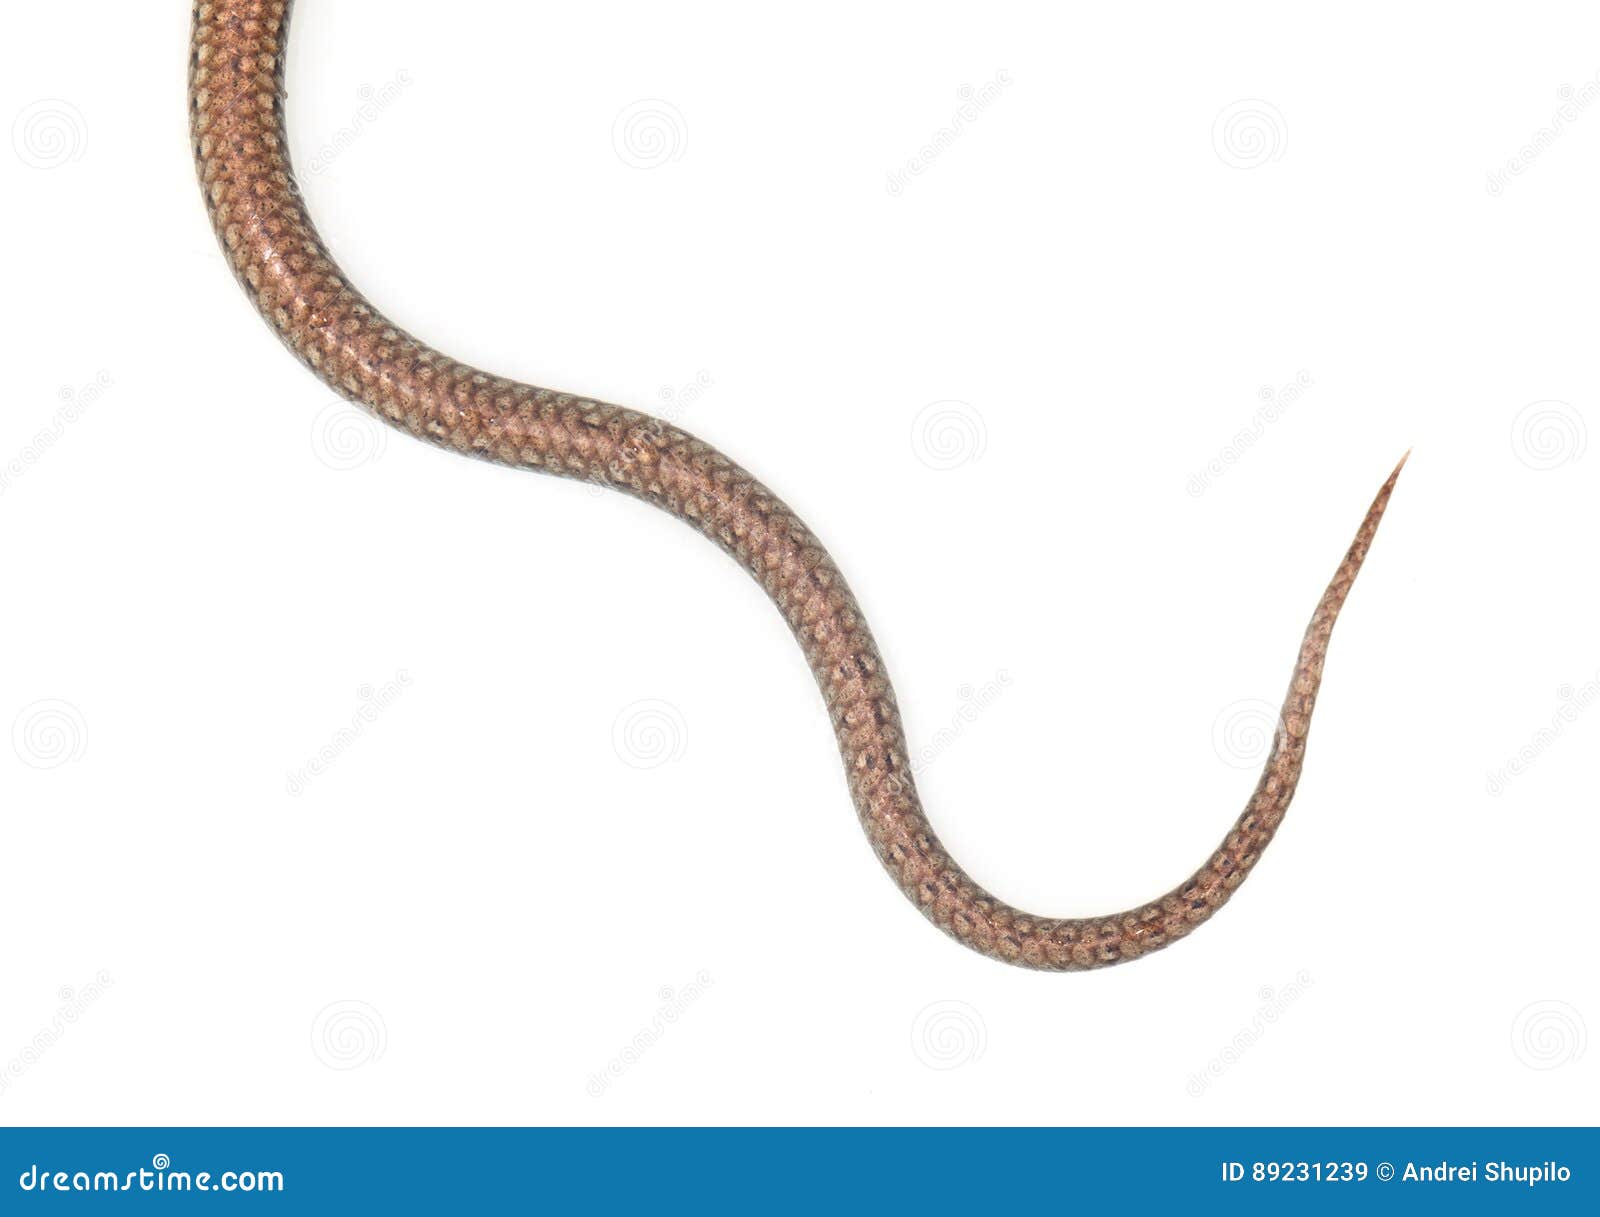 蛇的尾巴在白色背景的 库存照片. 图片 包括有 爬行动物, 致命地, 通配, 国王, 灰色, 查出, 汉娜 - 102148154